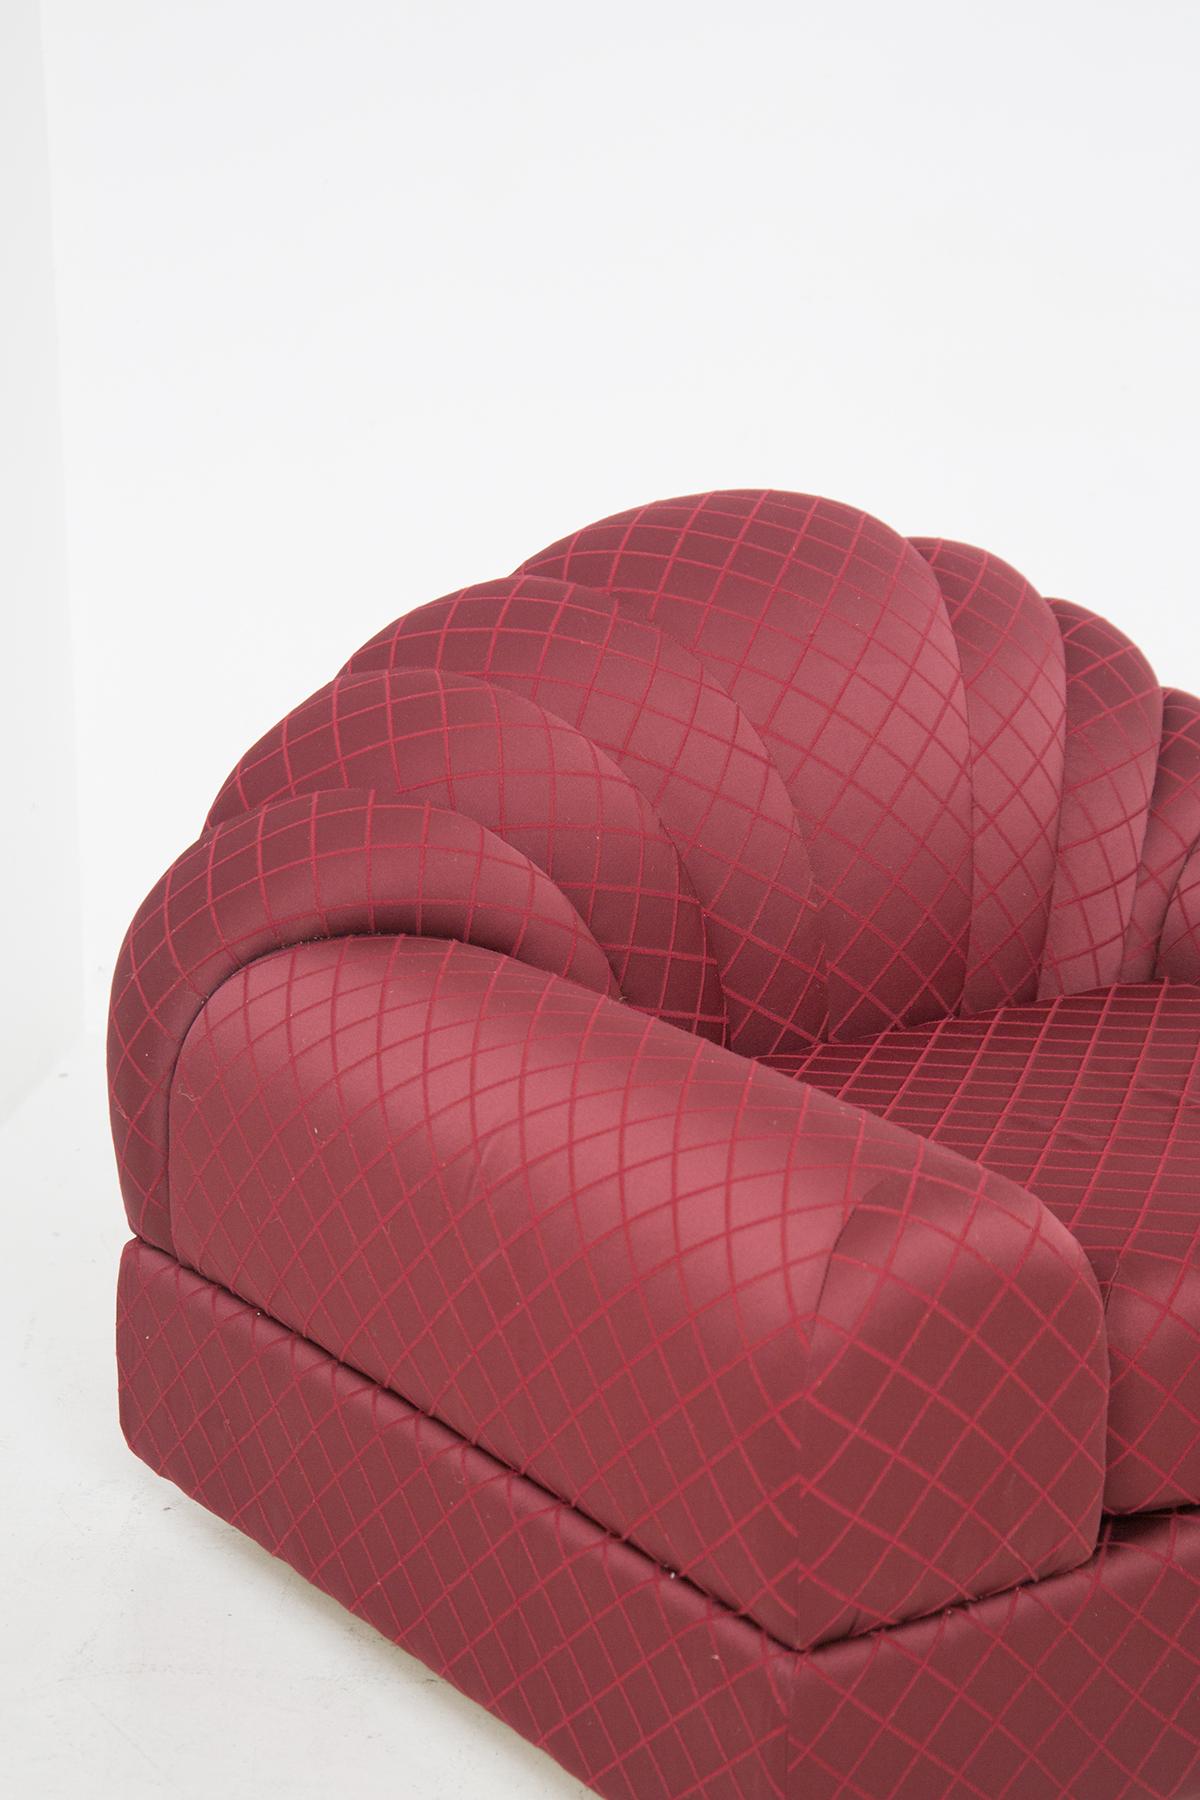 Die eleganten Vintage-Sessel wurden in den 70er Jahren von dem berühmten Alain Delon für den Edelhersteller Maison Jansen entworfen. Das Originaletikett von Alain Delon ist vorhanden. 
Die beiden Sessel zeichnen sich durch geschwungene Linien und